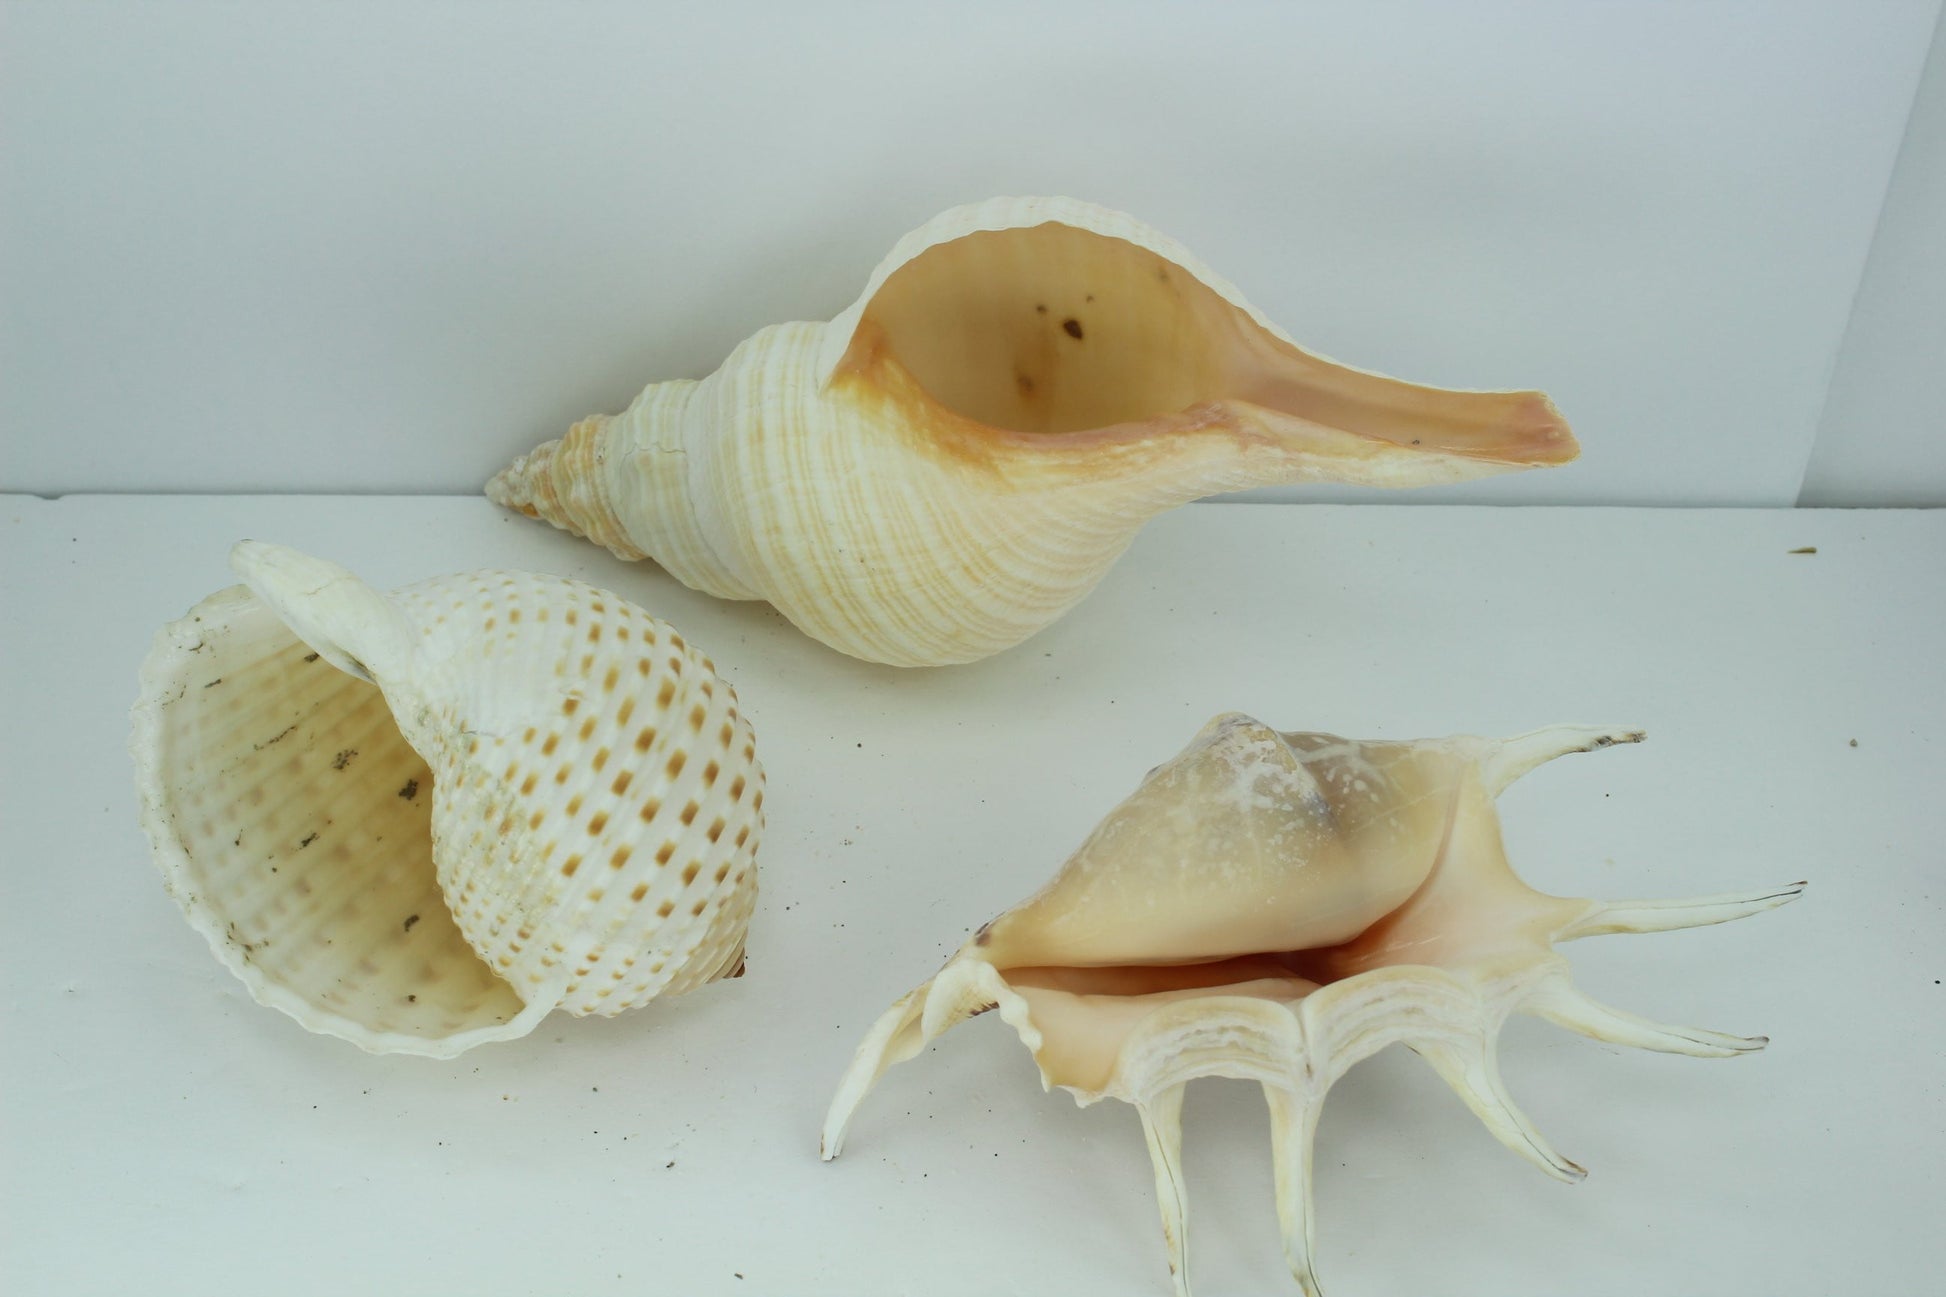 Florida Natural Shells 3 Vintage Conch Spider Tun Estate Collection Shell Art Collectibles Aquarium decor